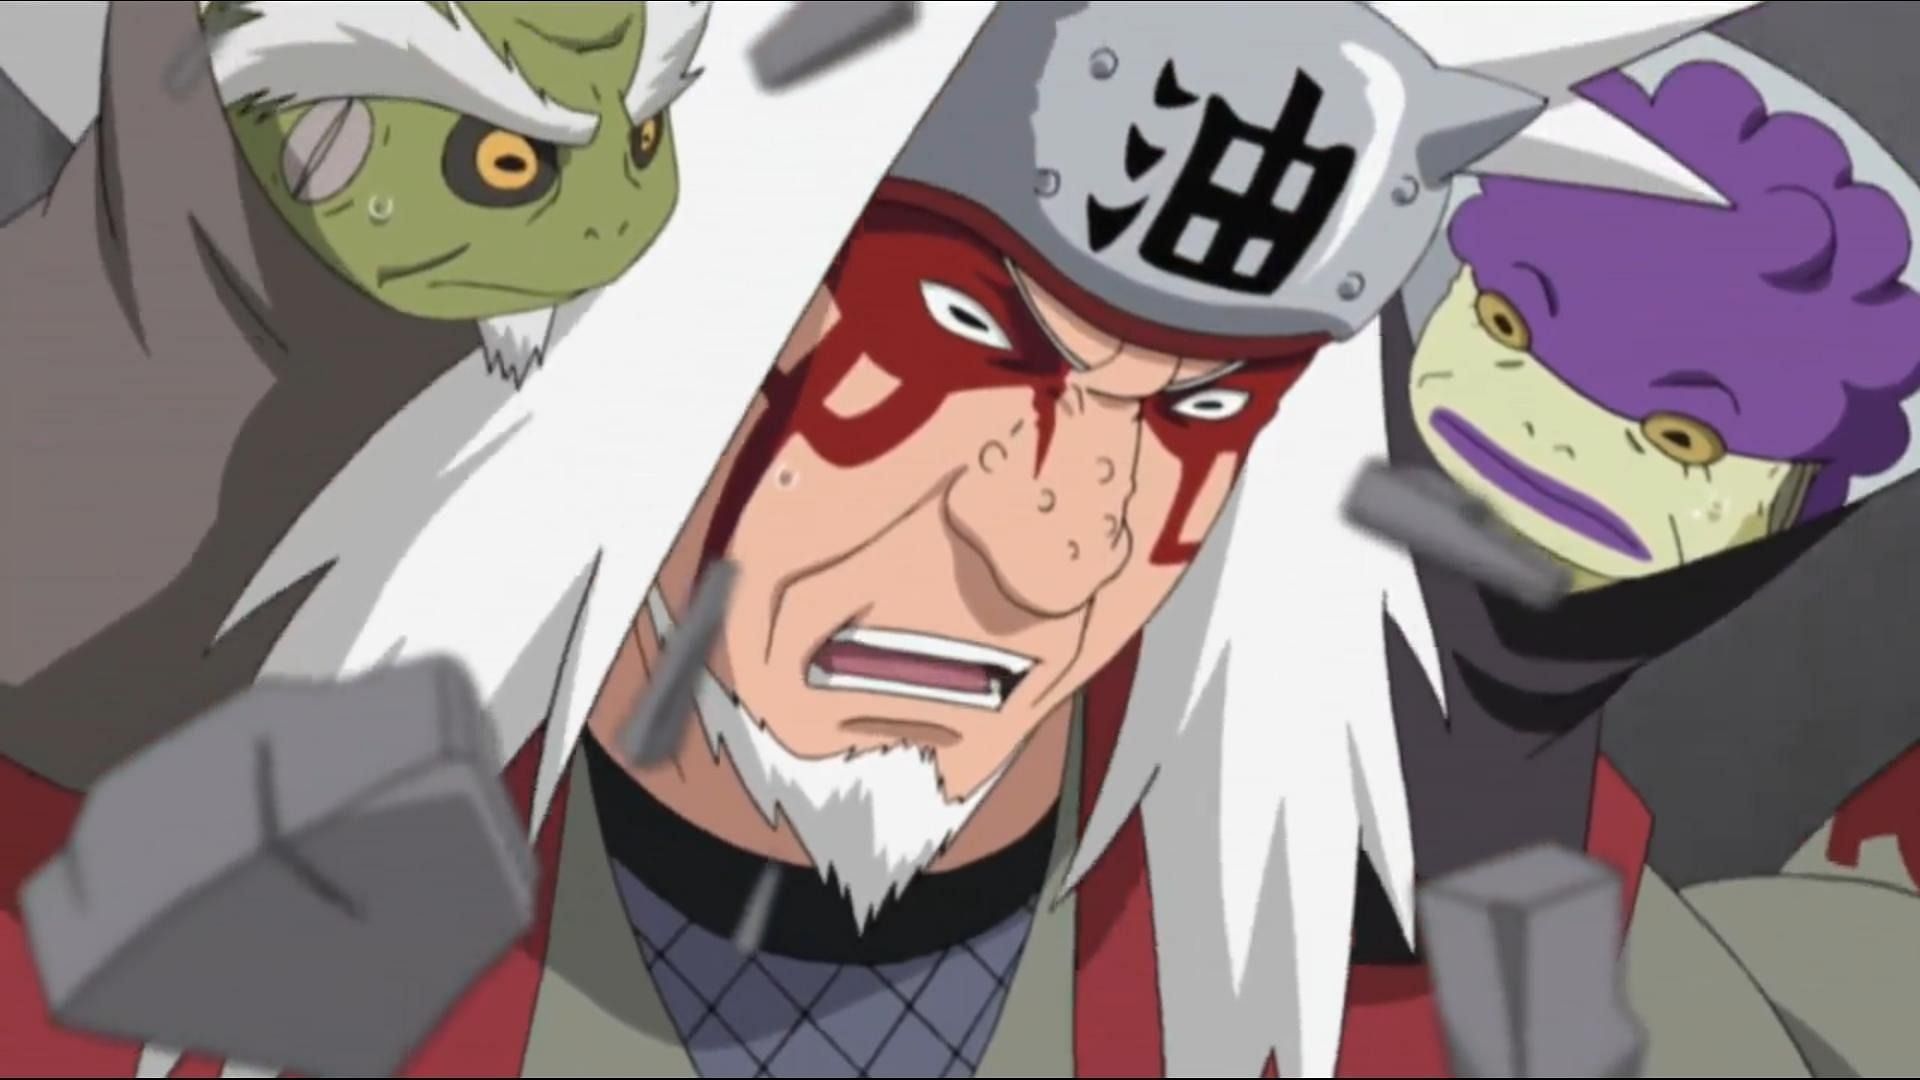 Jiraiya using Sage Jutsu in the Naruto: Shippuden anime (Image via Studio Pierrot)